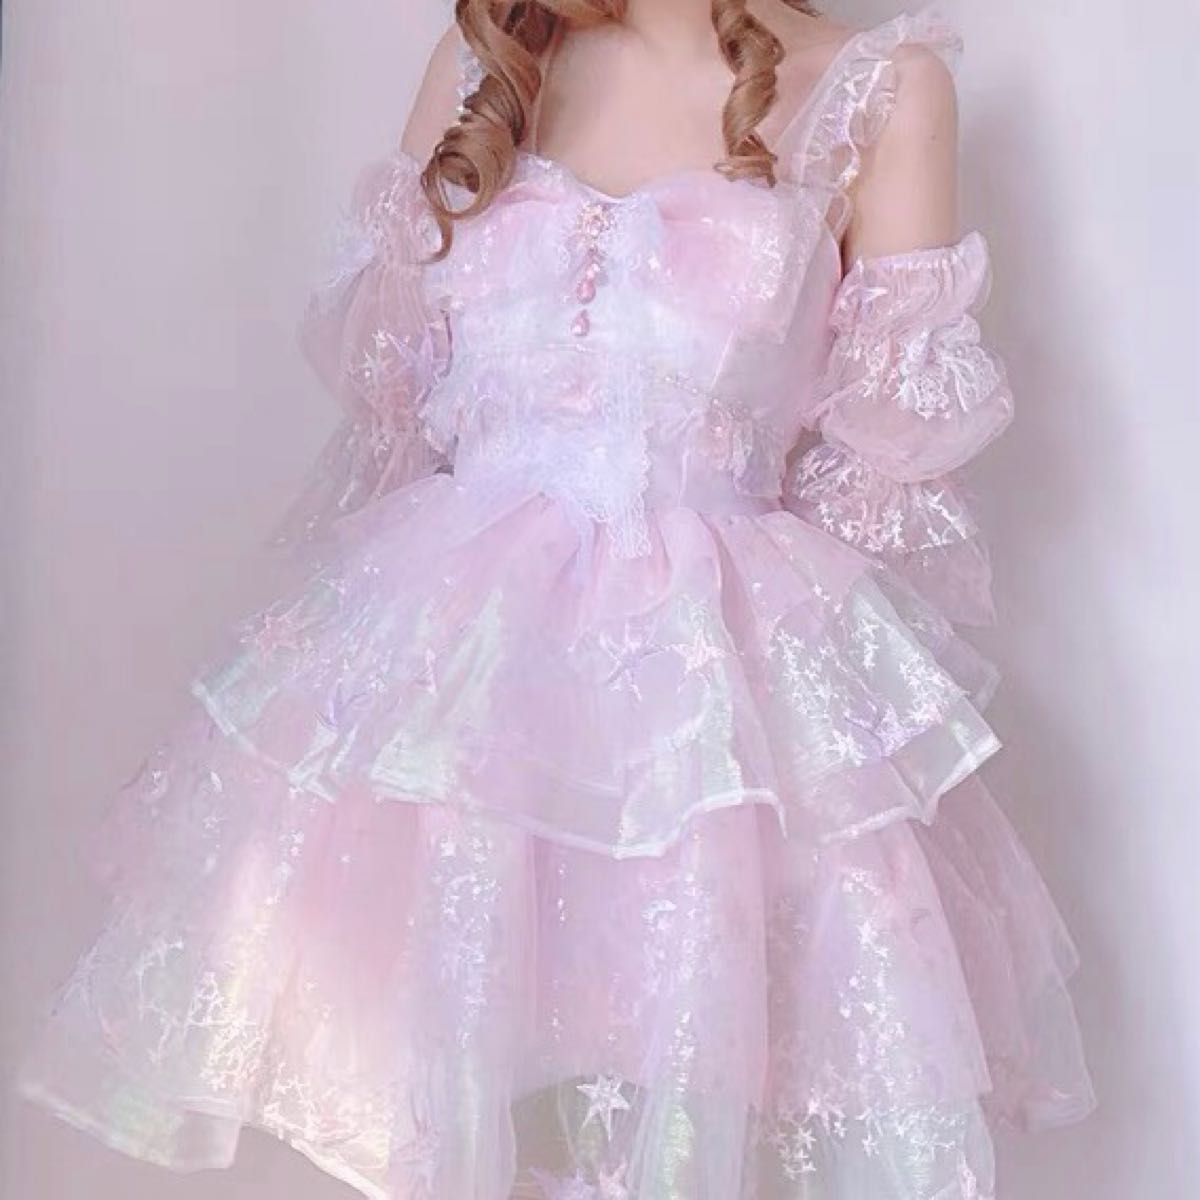 アイドル衣装 ピンク ラメ 星 ビジュー 可愛い 魔法少女 コスプレ クリスマス カラードレス 演奏会 パーティードレス